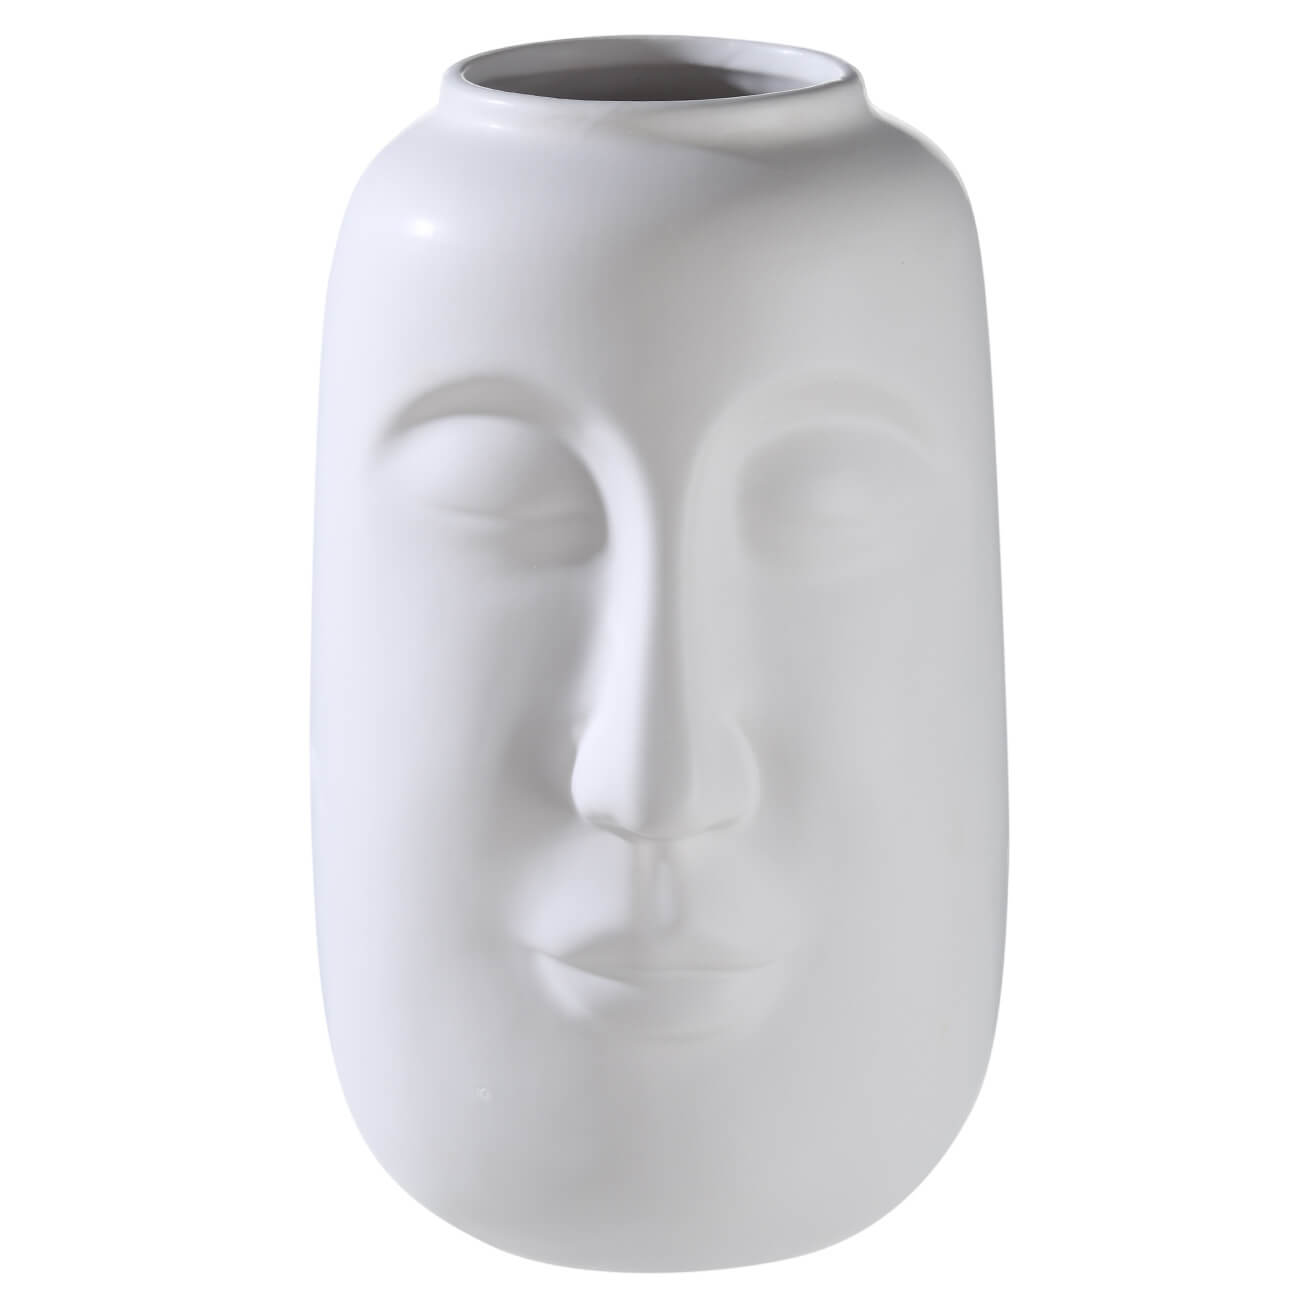 Ваза для цветов, 26 см, декоративная, керамика, белая, Лицо, Face ваза для сухо ов керамика настольная 27 5 см мурано y4 6553 белая